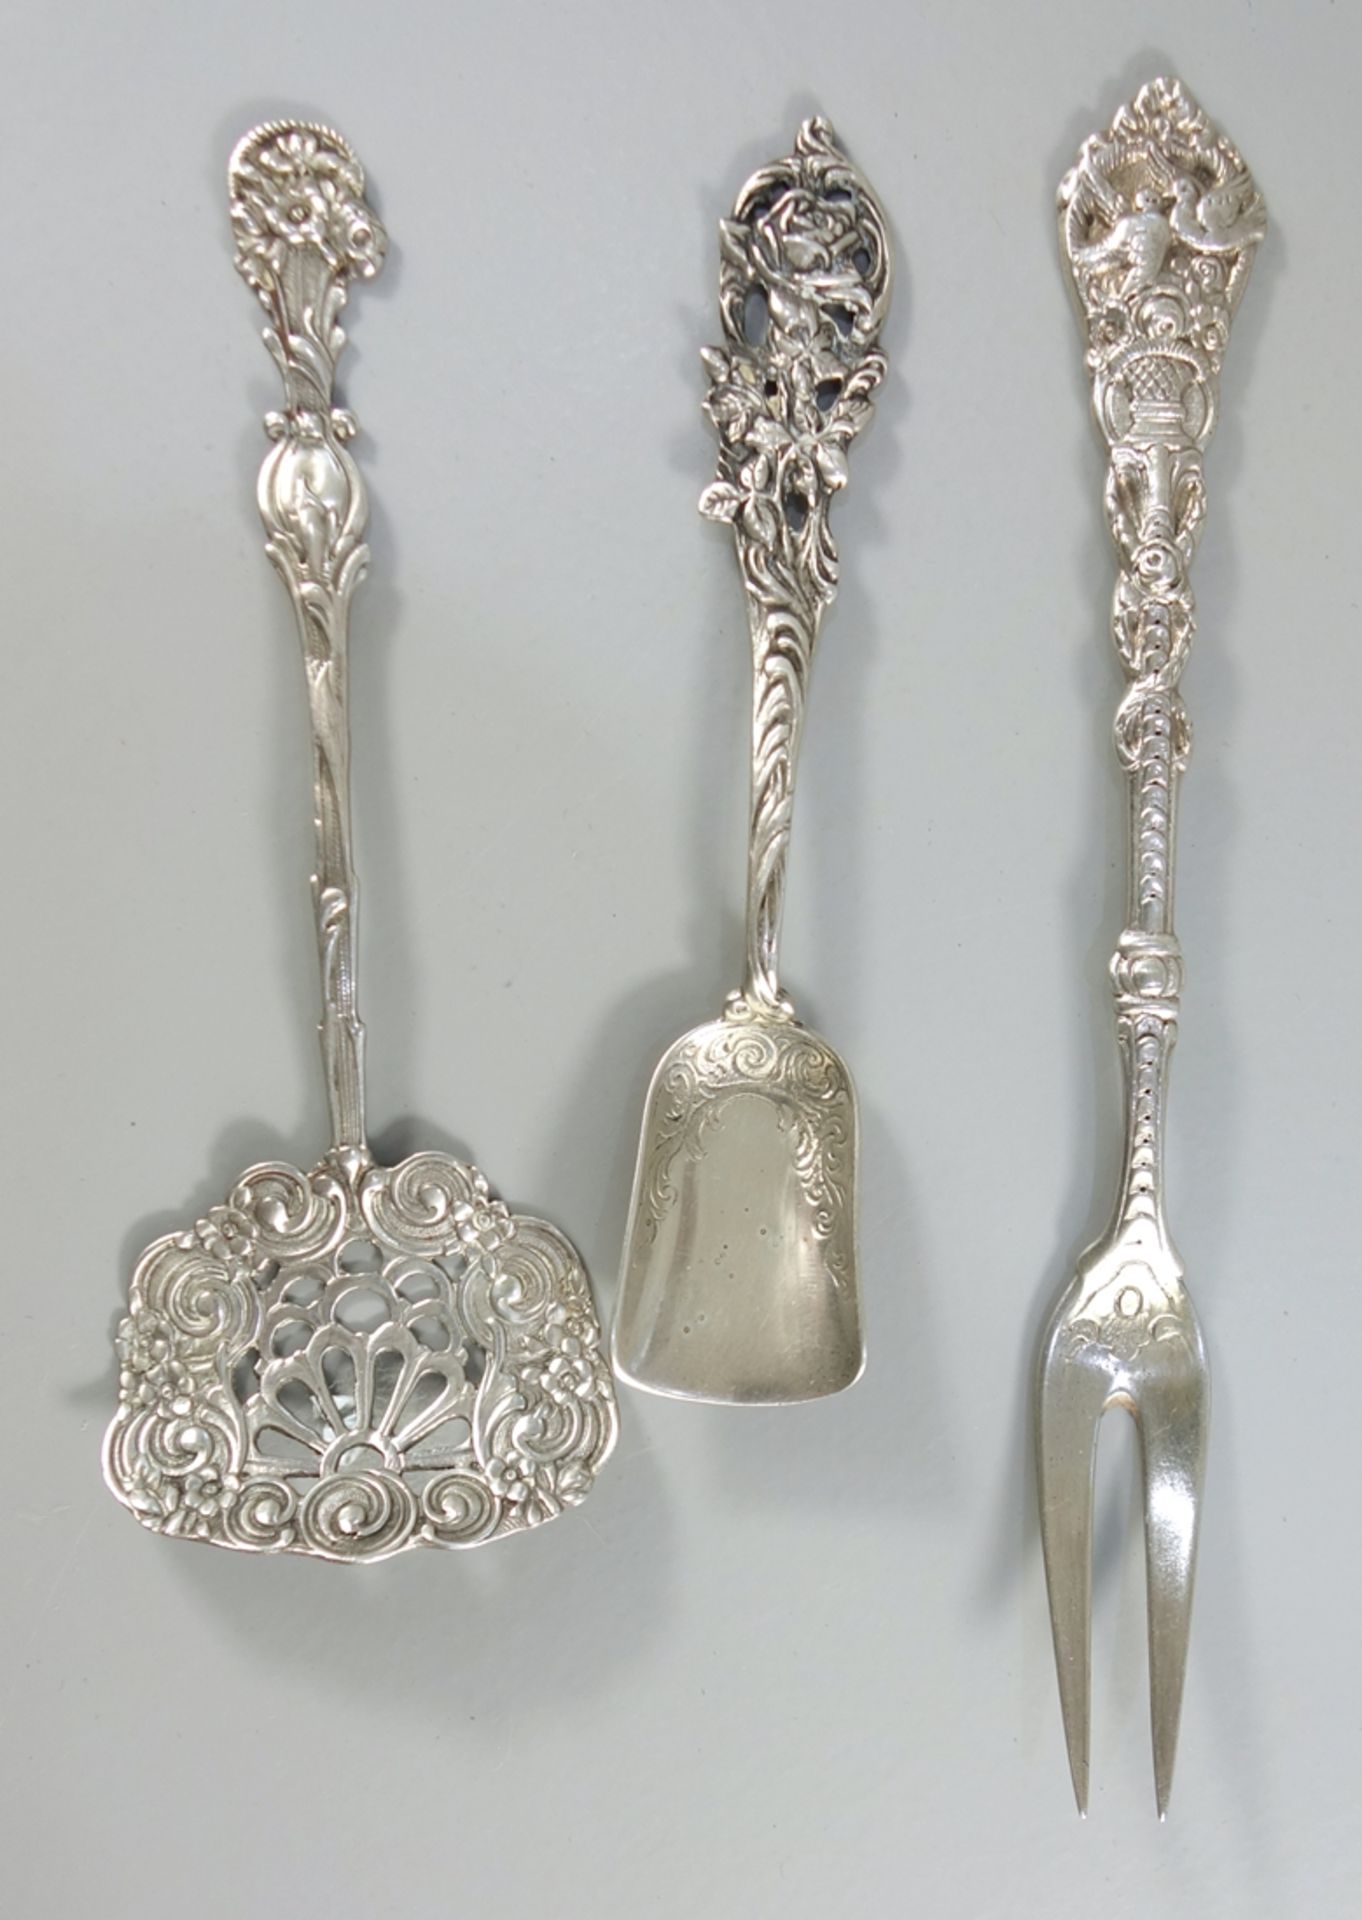 3 Anlegteile, überwiegend mit Blumendekor, 800er Silber, u.a. C. Widmann: Zuckerschaufel, kleiner